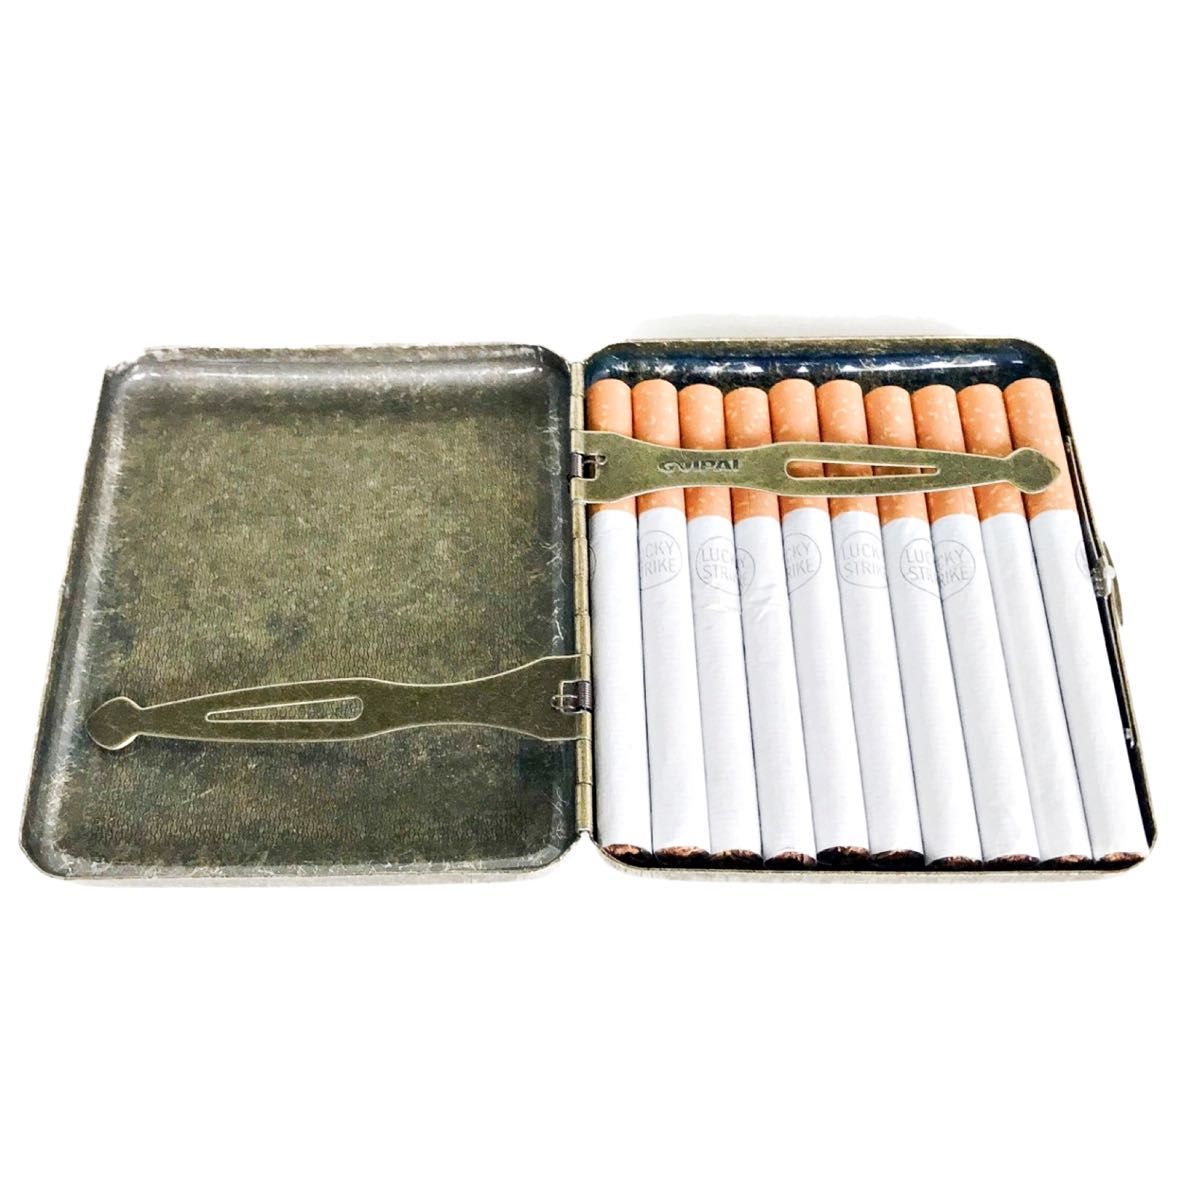 4 シガレット ケース たばこ ケース アンティーク 20本 収納 シガーケース